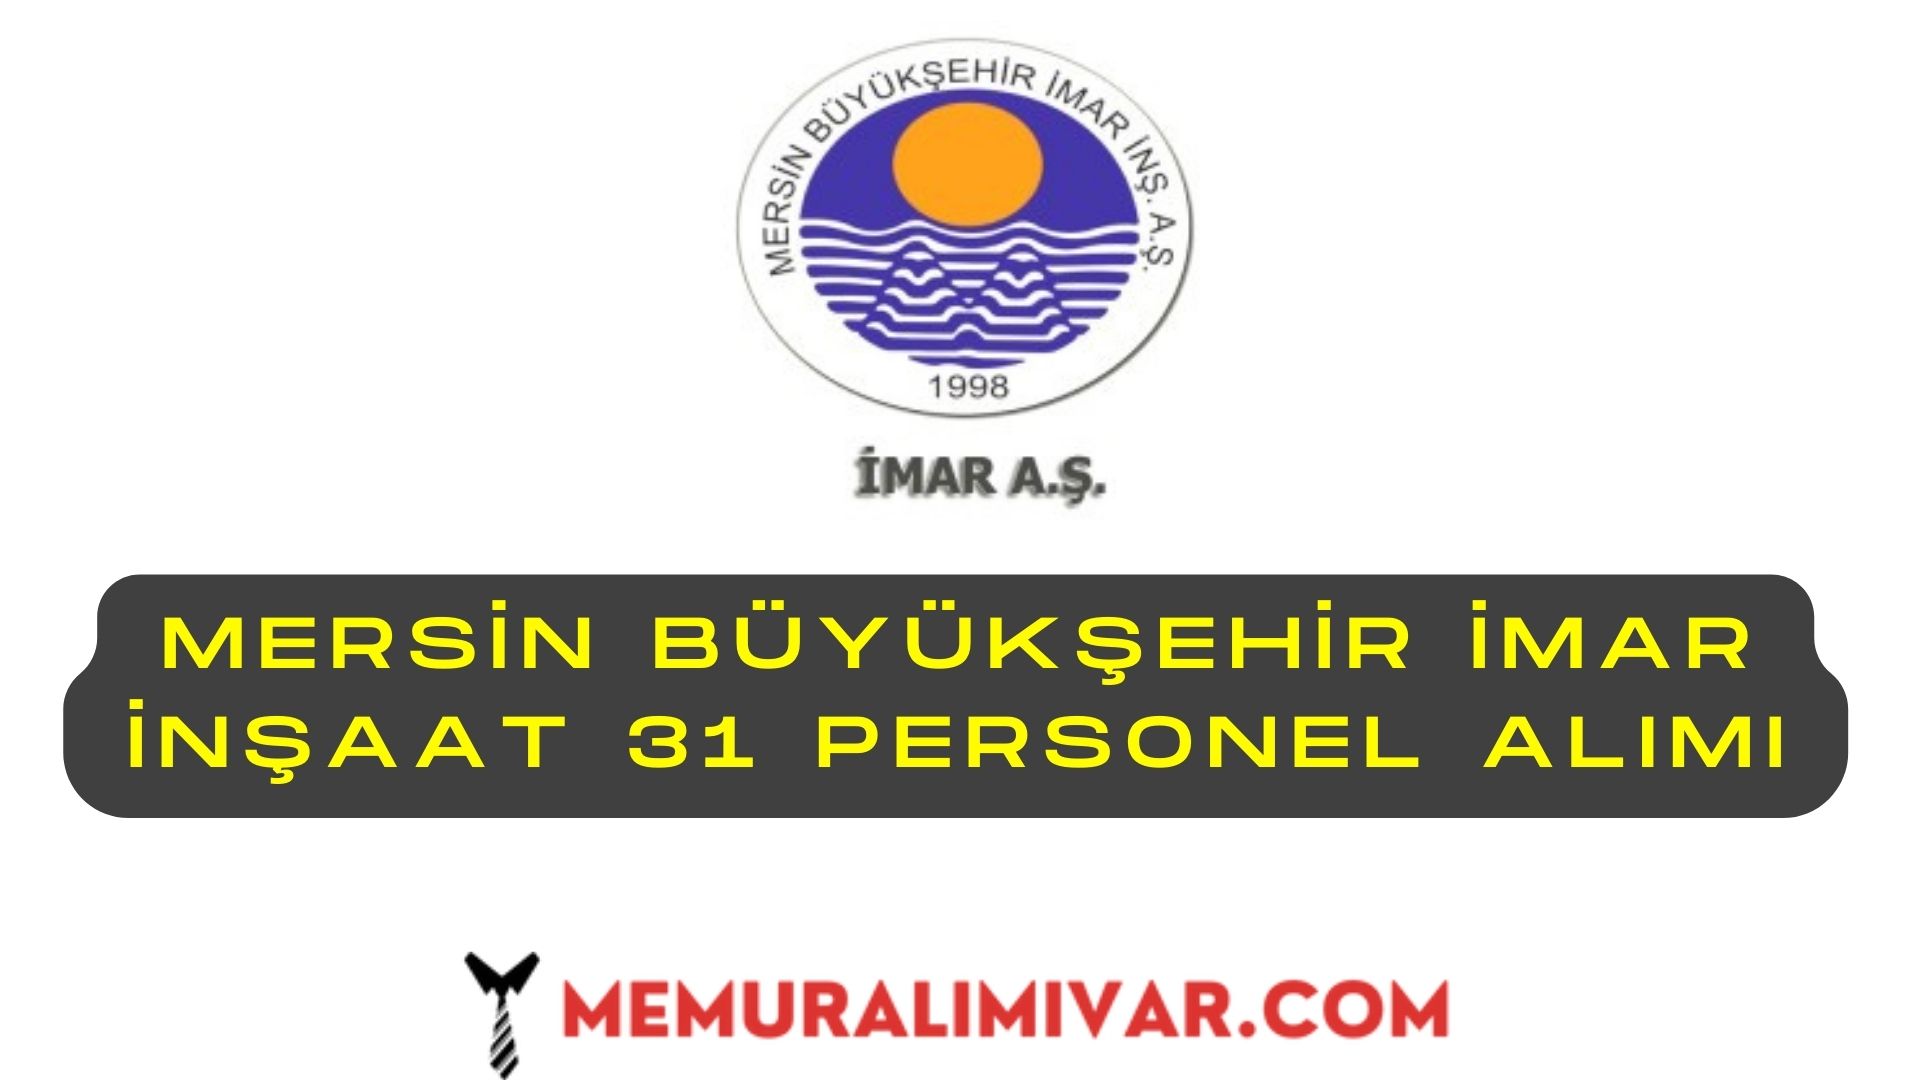 Mersin Büyükşehir İmar İnşaat 31 Personel Alımı İş Başvuru Sayfası